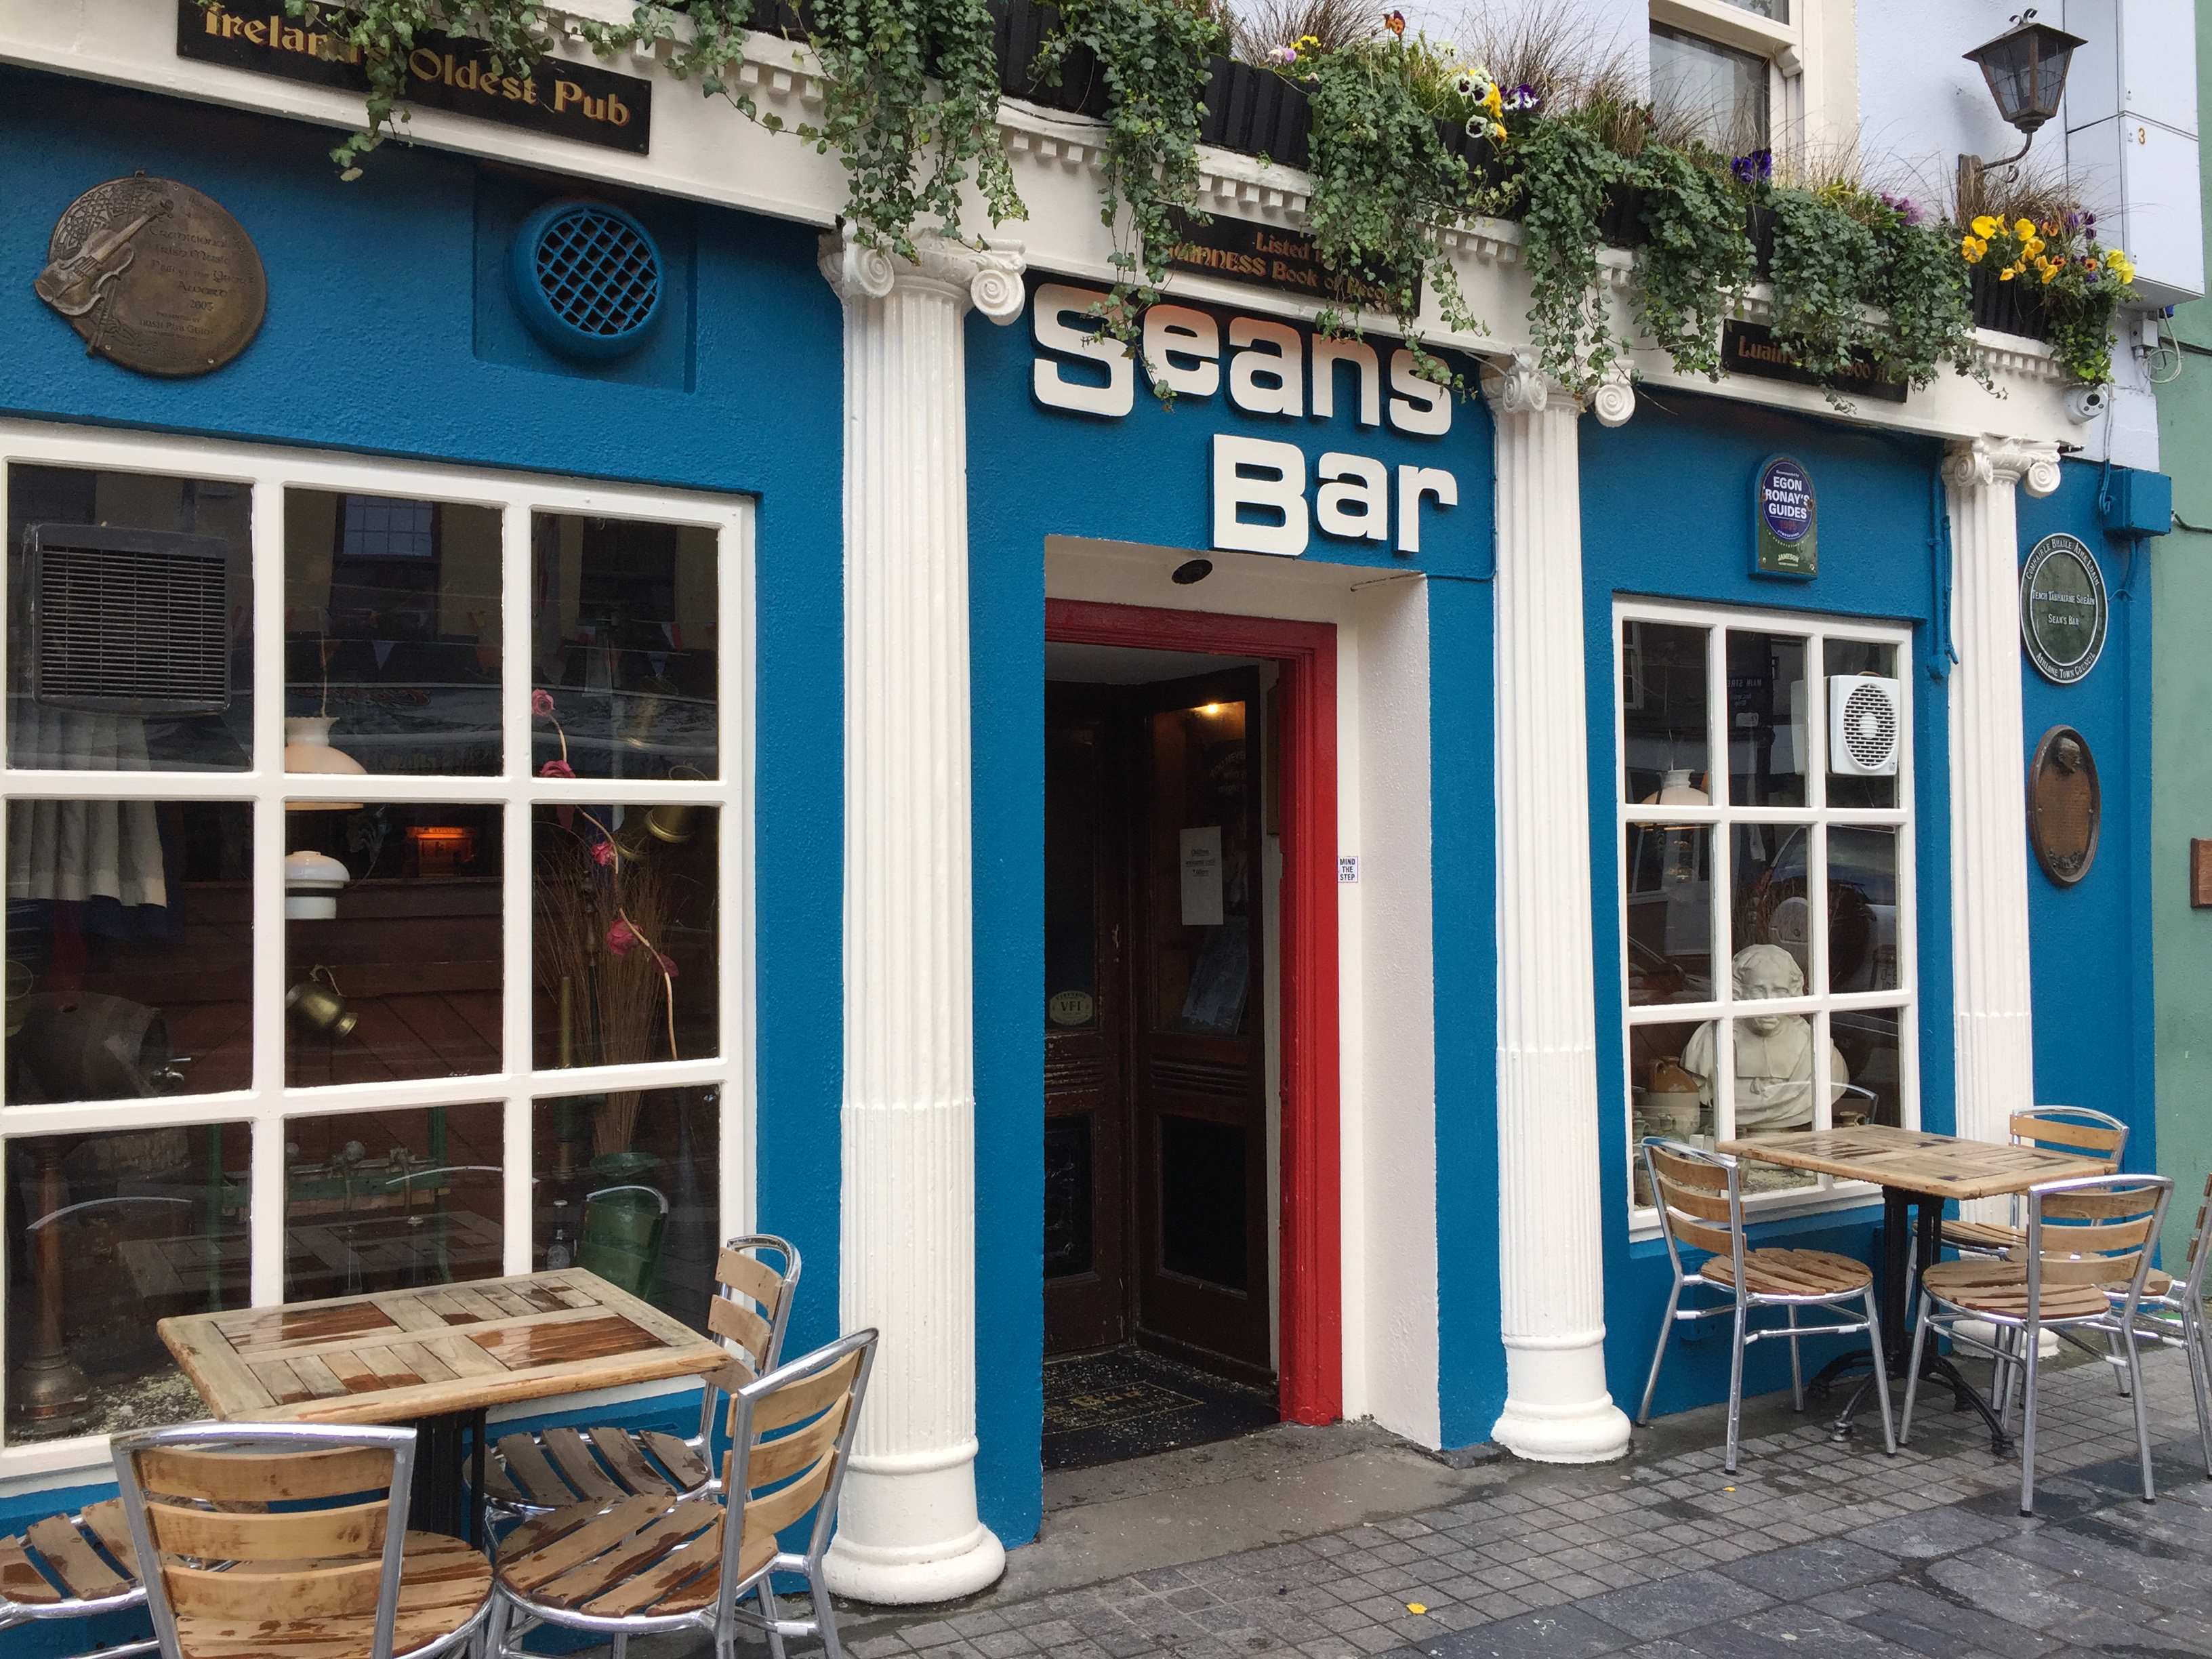 Шон паб. Паб Sean's Bar Ирландия. Паб Шон в Ирландии. Seans Bar паб в Ирландии. Бар Шона: самый старый паб Ирландии.